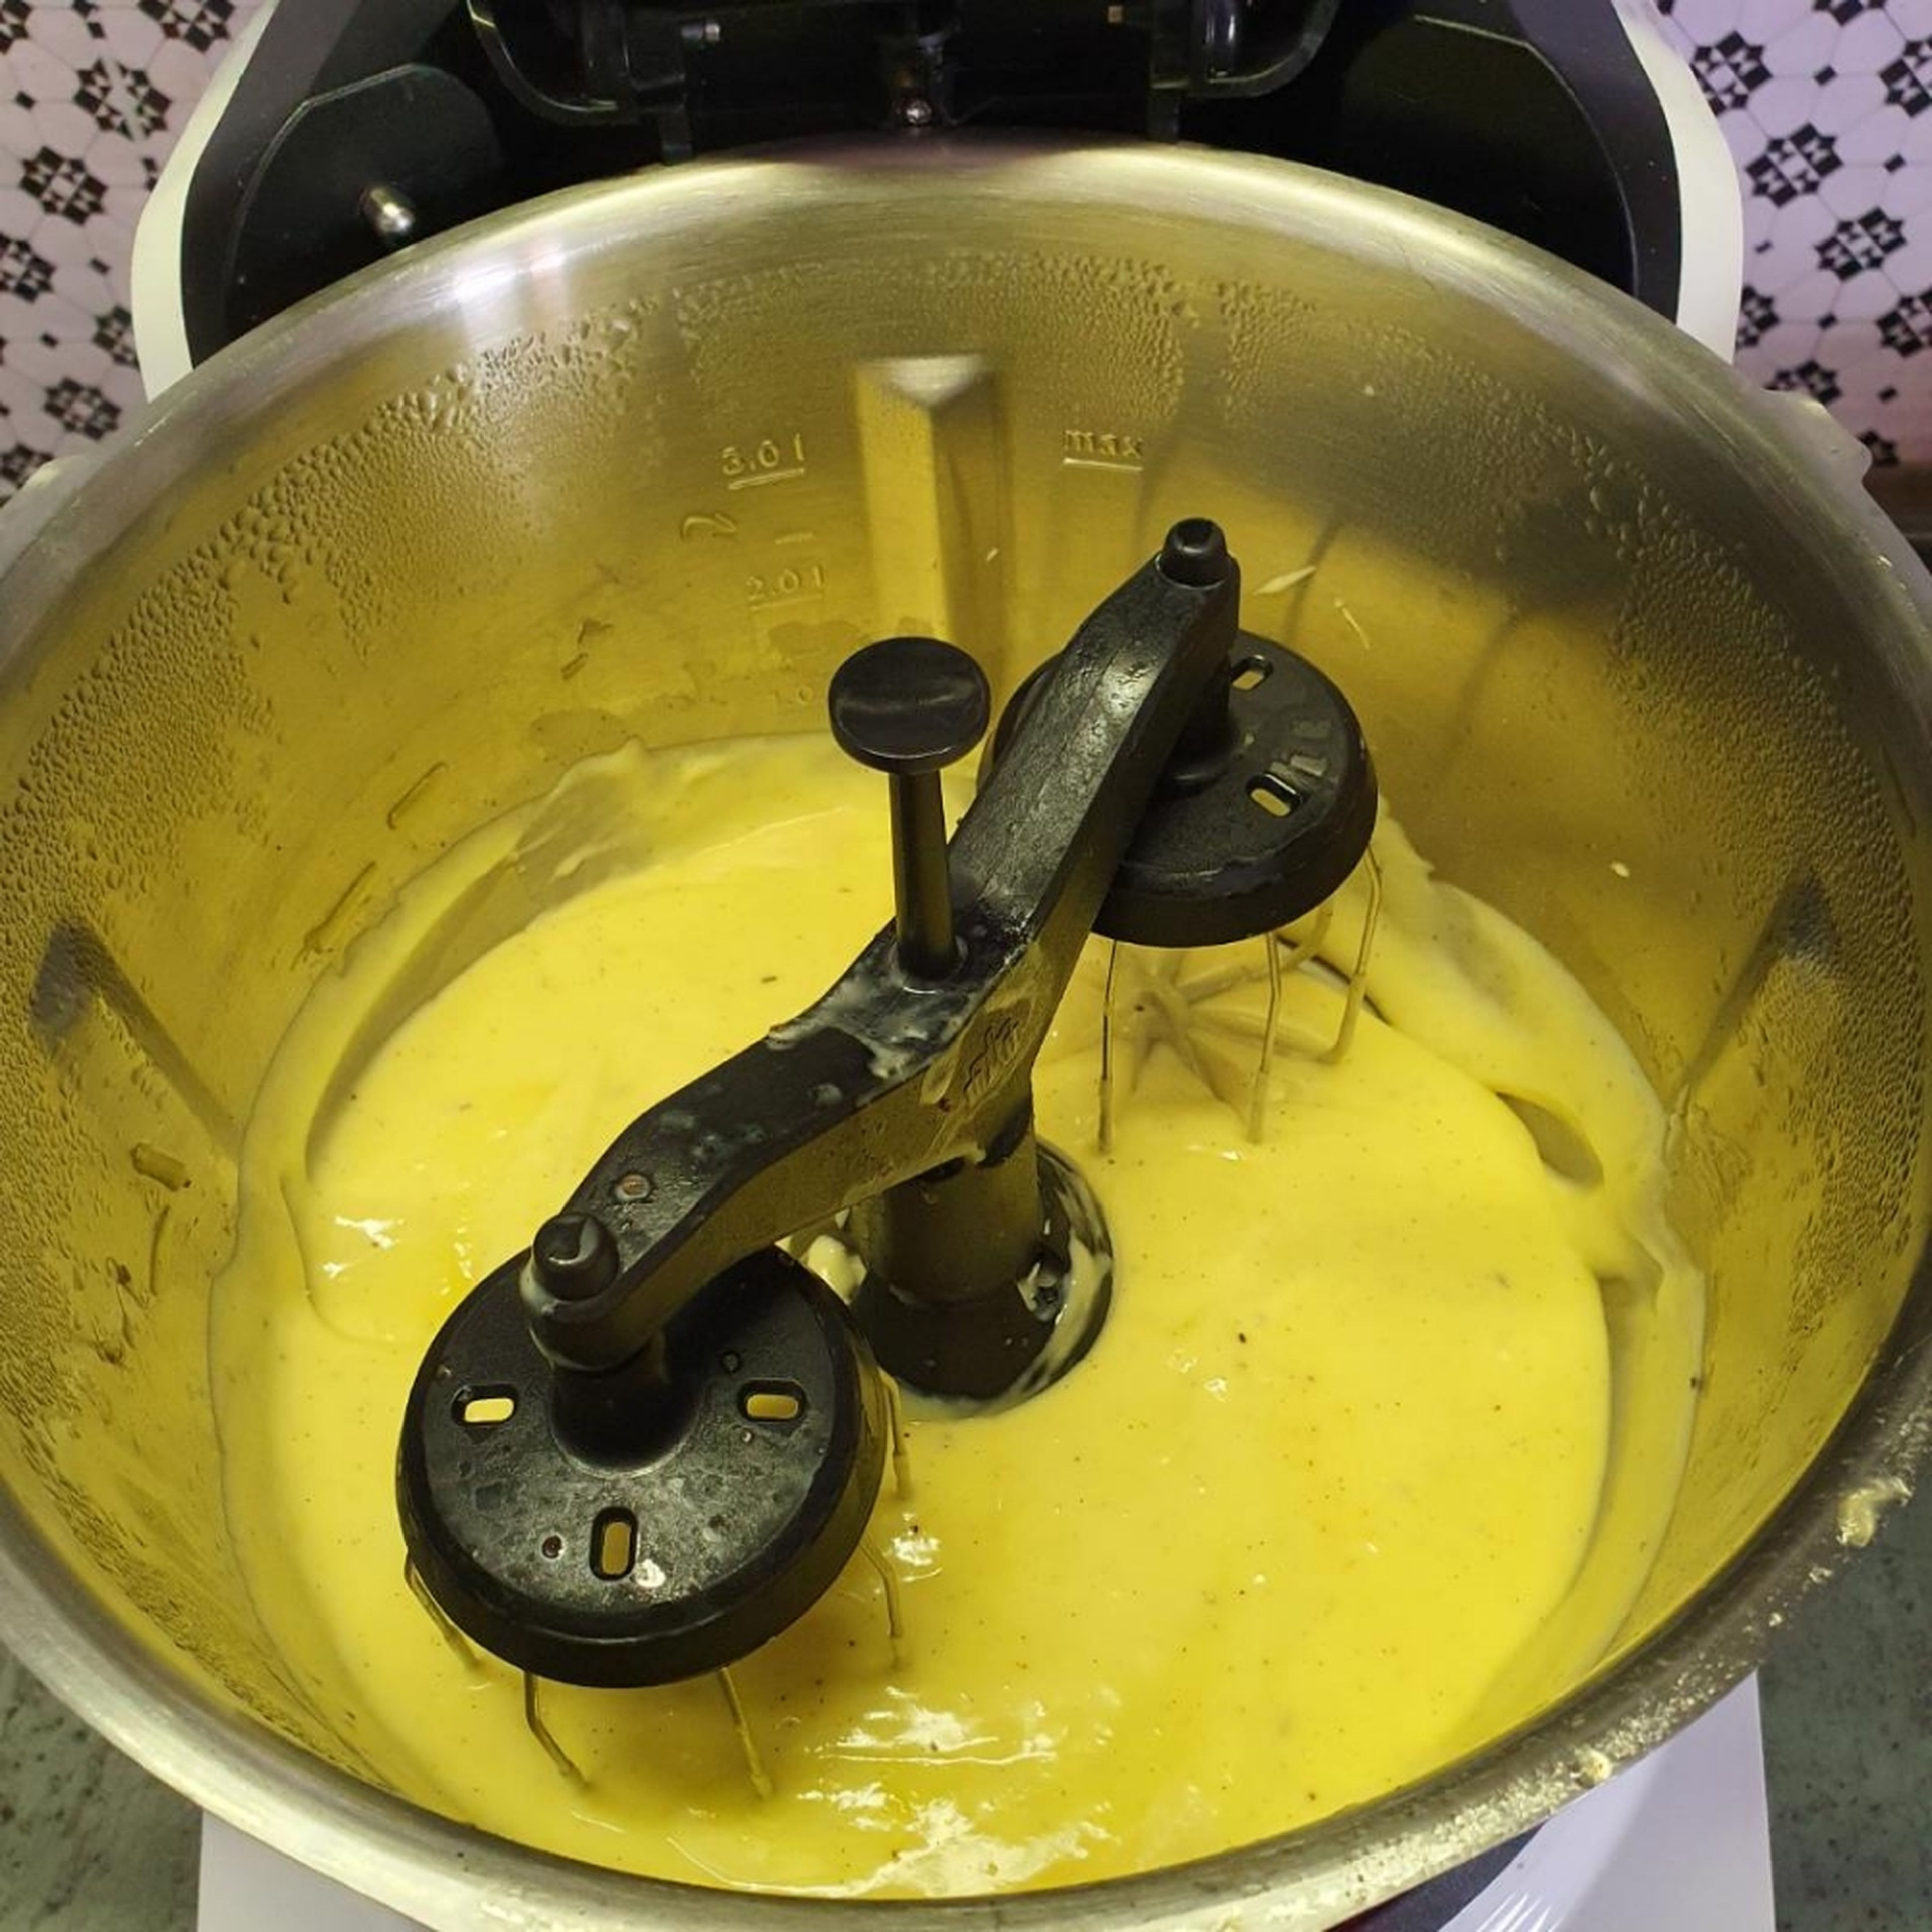 Den Rhabarbersaft mit Sahne und gegebenenfalls Milch auf 1/2 Liter auffüllen. Die Rabarbersaft-Sahne-Mischung zu 3/4 in den Topf geben und bei geschlossenem Deckel, ohne Messbecher, zum Kochen bringen (Zwillingsrührbesen | Stufe 3 | 95°C | 2-3 Minuten). Mit dem Rest der Mischung das Puddingpulver anrühren. Hitze ausschalten und die Puddingmischung durch die Deckelöffnung geben. Hitze wieder erhöhen und den Pudding aufkochen lassen (Zwillingsrührbesen | Stufe 3 | 95°C | ca. 1 Minute). Pudding erkalten lassen. Wenn der Pudding kalt ist 1 Becher Mascarpone, bei geschlossenem Deckel mit eingesetztem Messbecher, mit Hilfe der Zwillingsrührbesen einrühren (Zwillingsrührbesen | Stufe 5 | ca. 1 Minute).